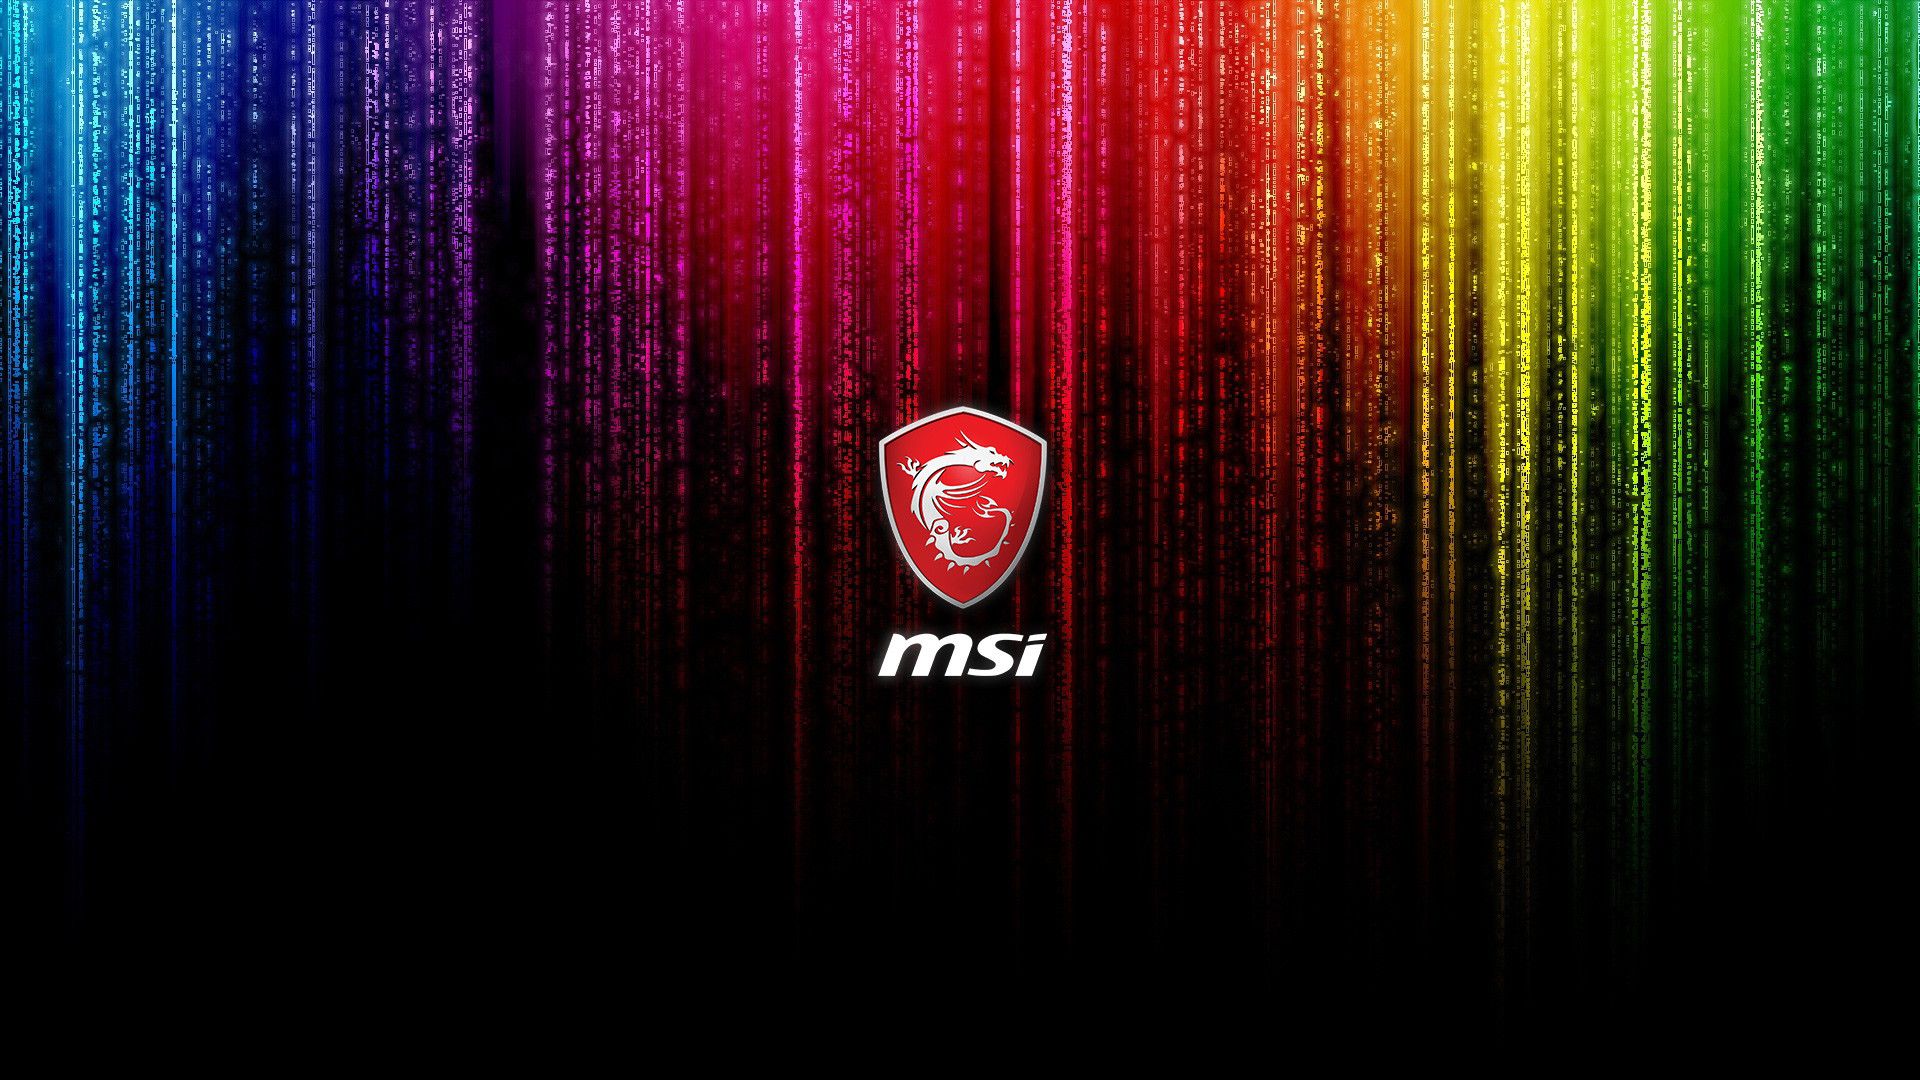 Đầy đủ các tùy chọn hình nền cao cấp, MSI là sự lựa chọn hoàn hảo cho desktop của bạn. Kiểu dáng đơn giản nhưng đầy phong cách, màu sắc sống động, các hình ảnh động đẹp mắt, bạn có thể tự do trang trí desktop của mình với những hình nền MSI mới và độc đáo.